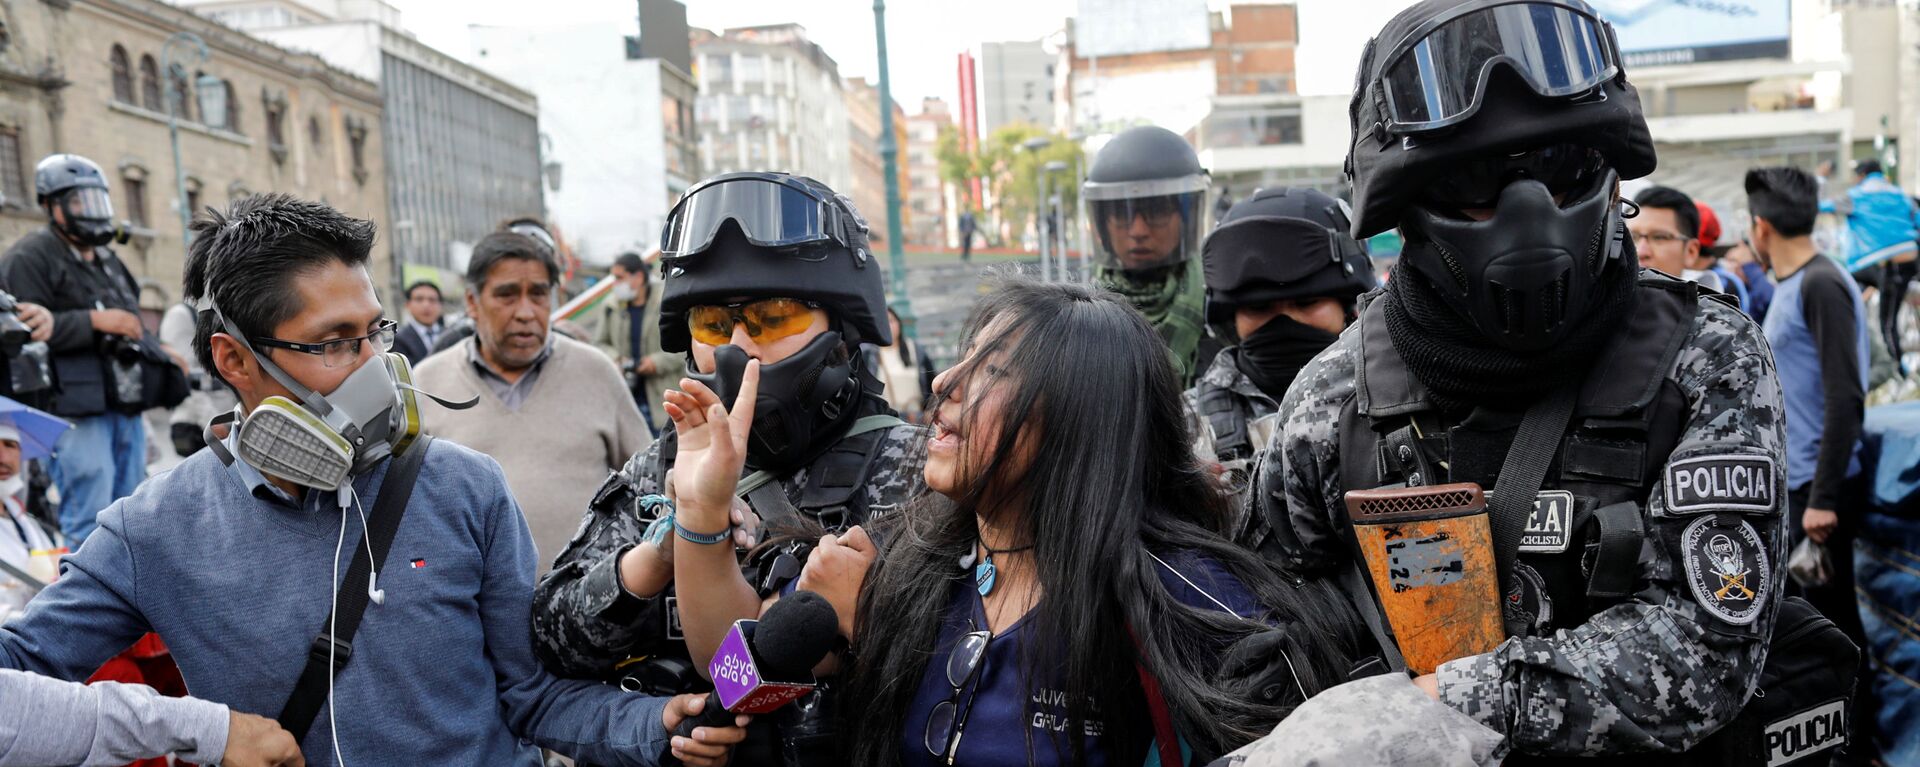 Protestas en Bolivia - Sputnik Mundo, 1920, 03.12.2019